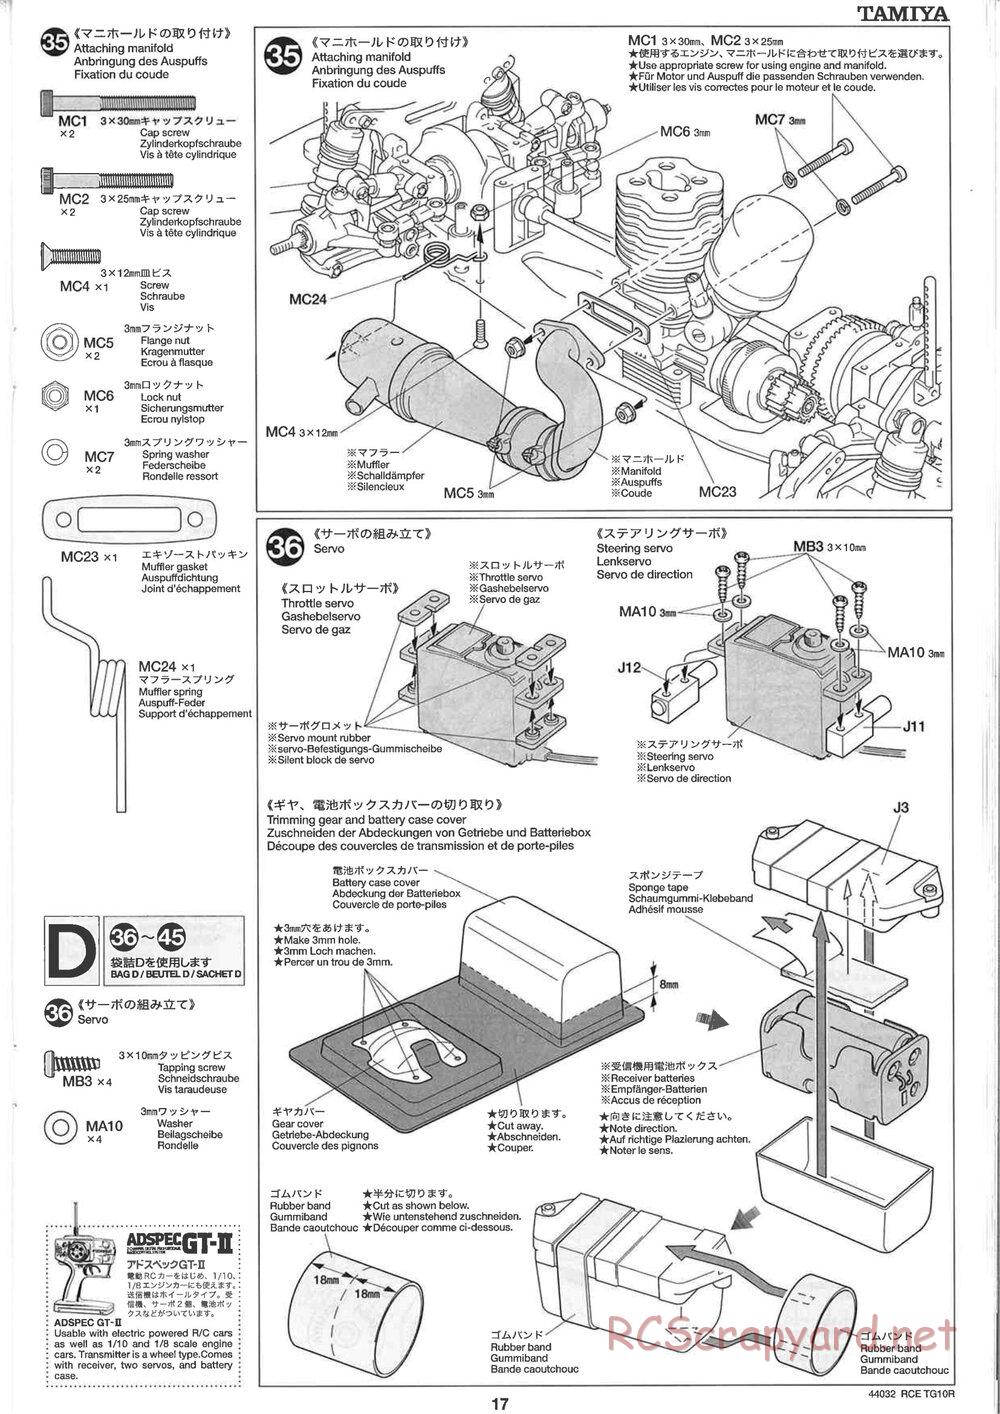 Tamiya - TG10R Chassis - Manual - Page 17